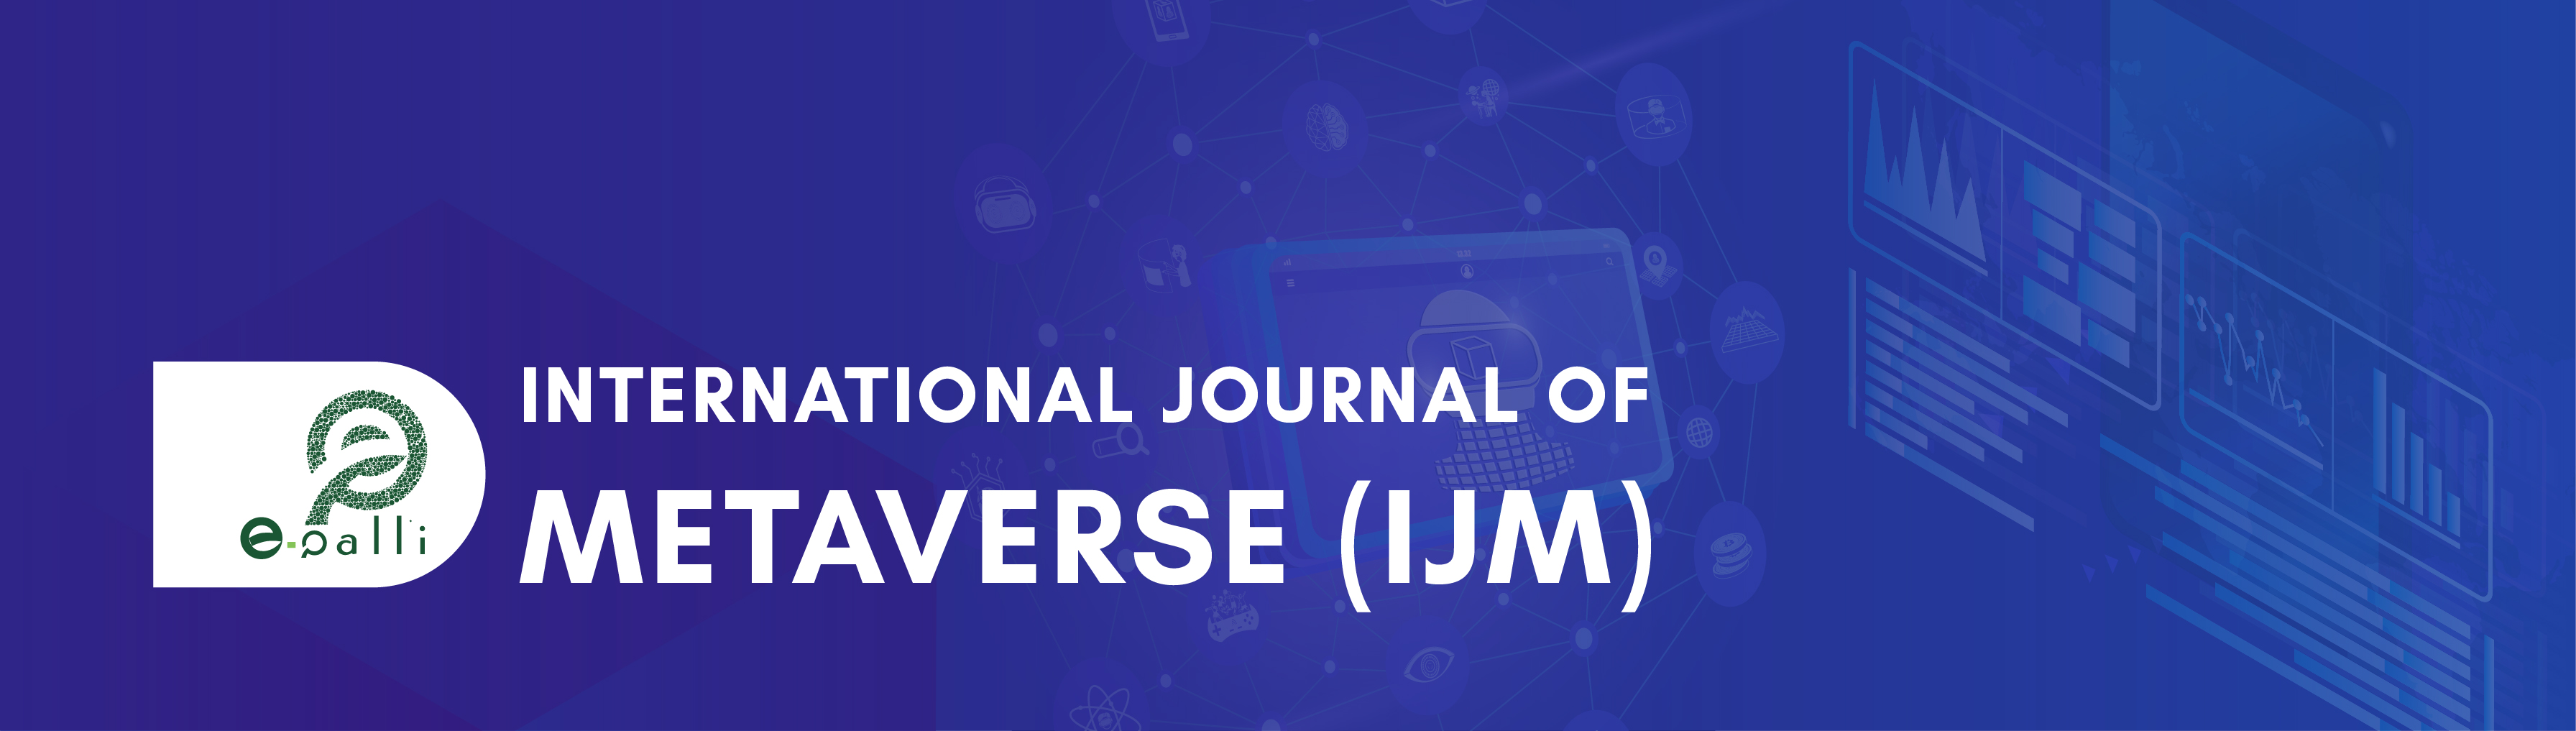 International Journal of Metaverse